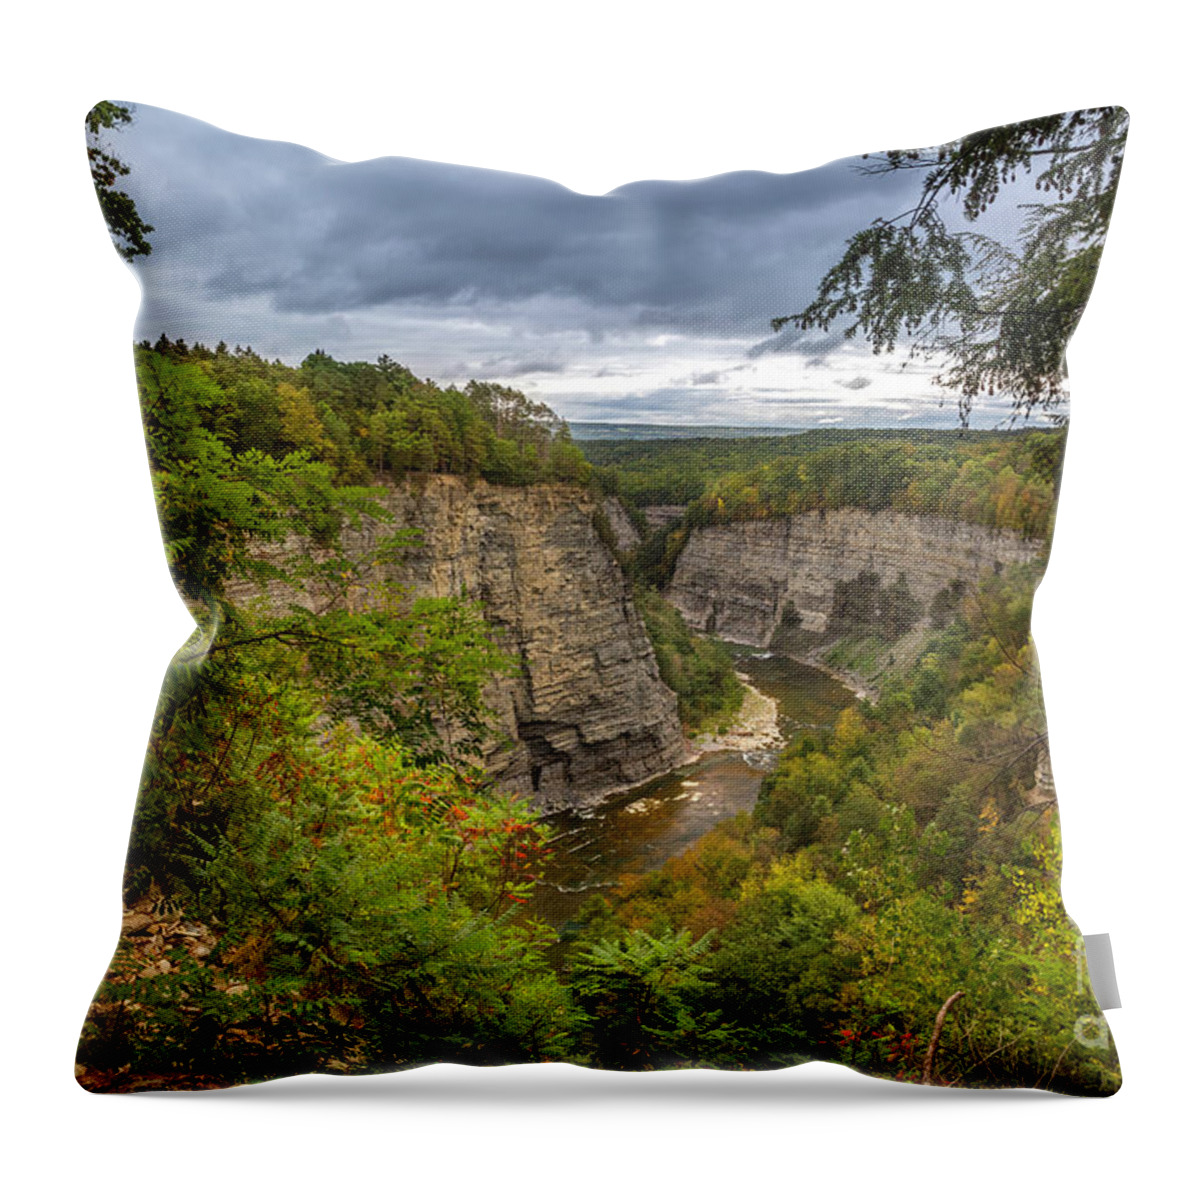 New York Throw Pillow featuring the photograph Genesee River Overlook by Karen Jorstad